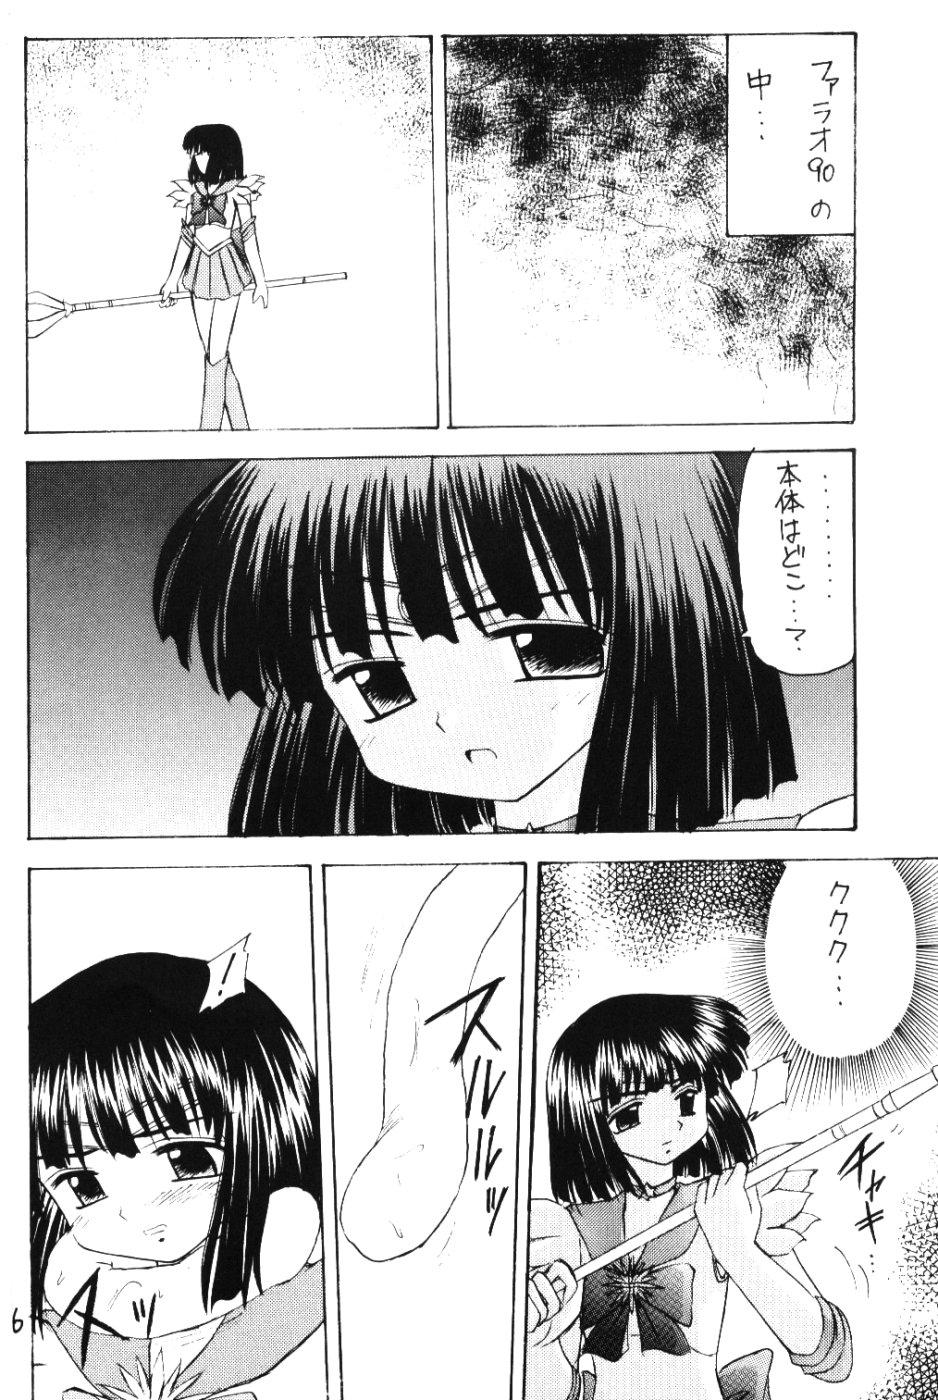 Clothed Sex Hotaru VI - Sailor moon Masturbandose - Page 5